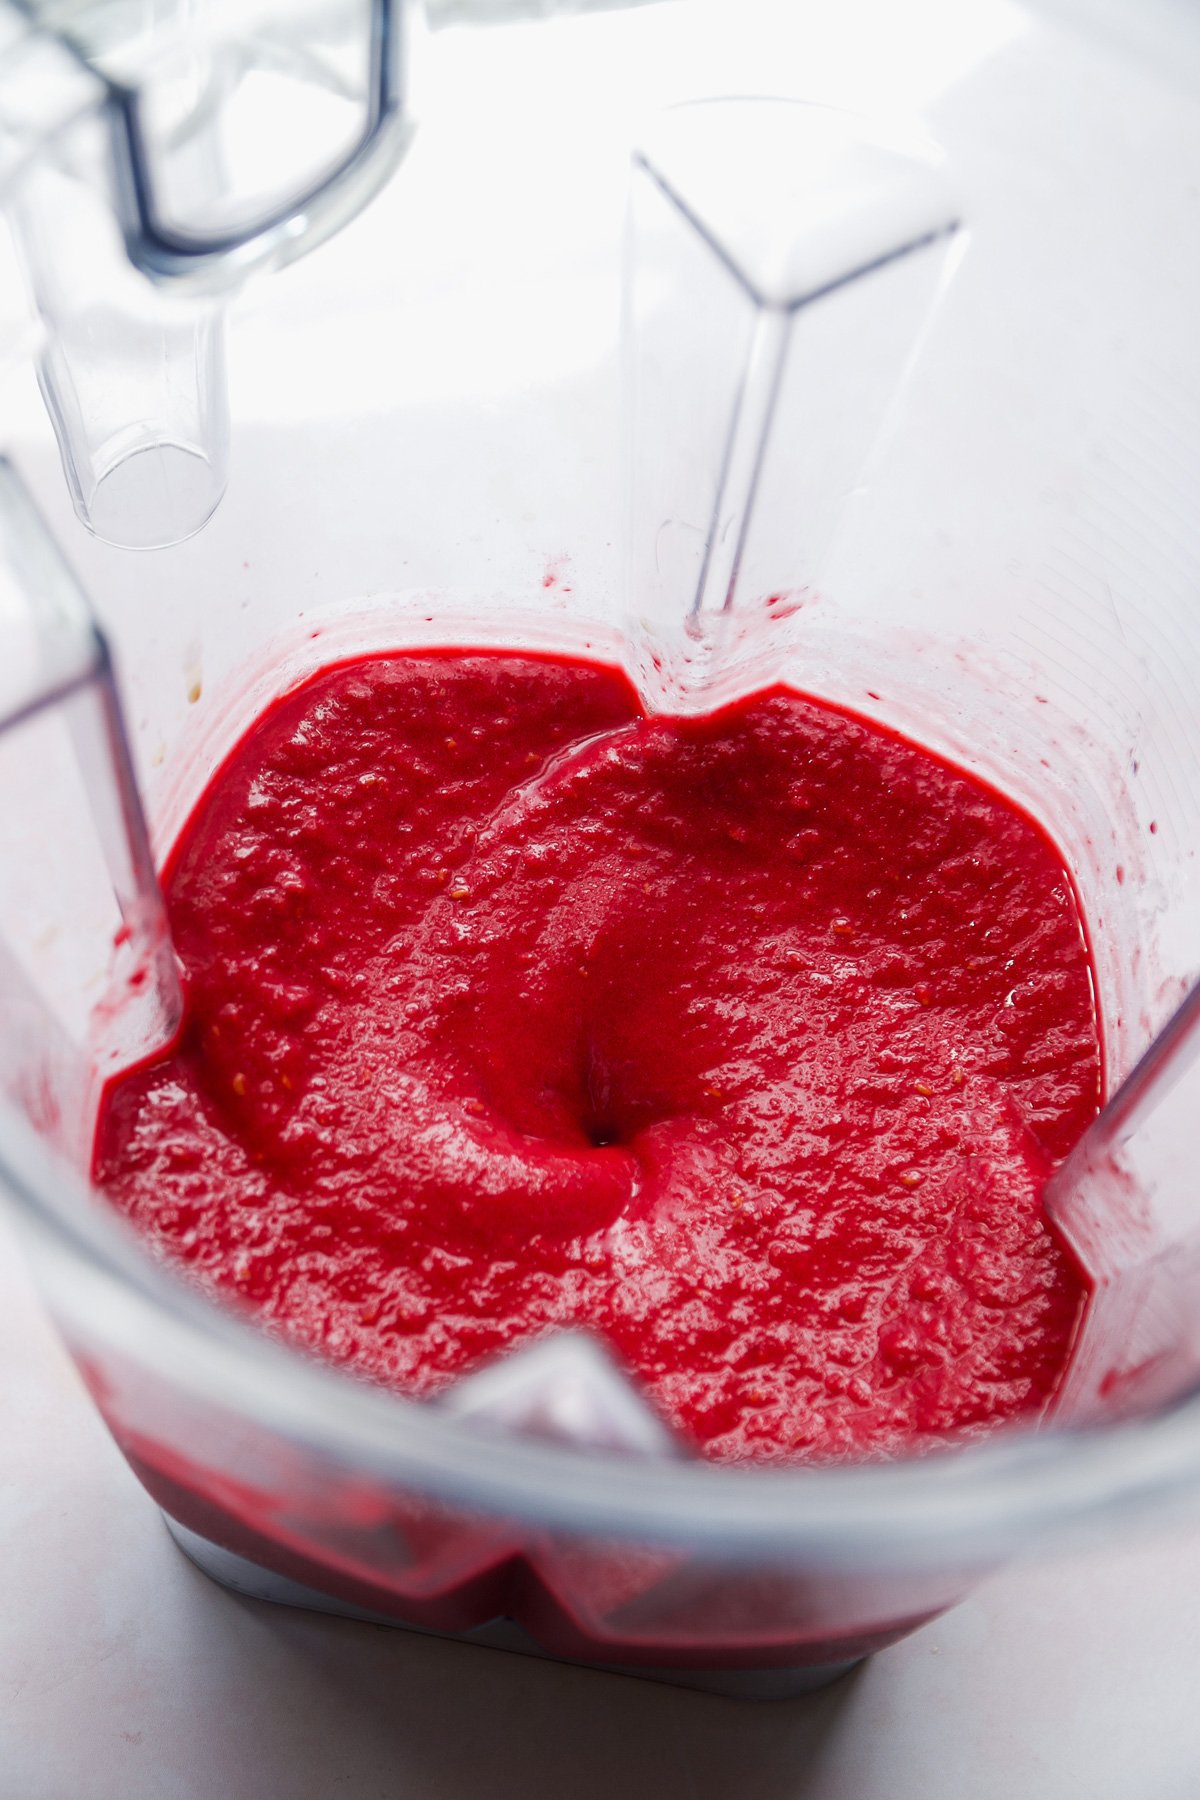 Raspberry sherbet blended up in a blender.